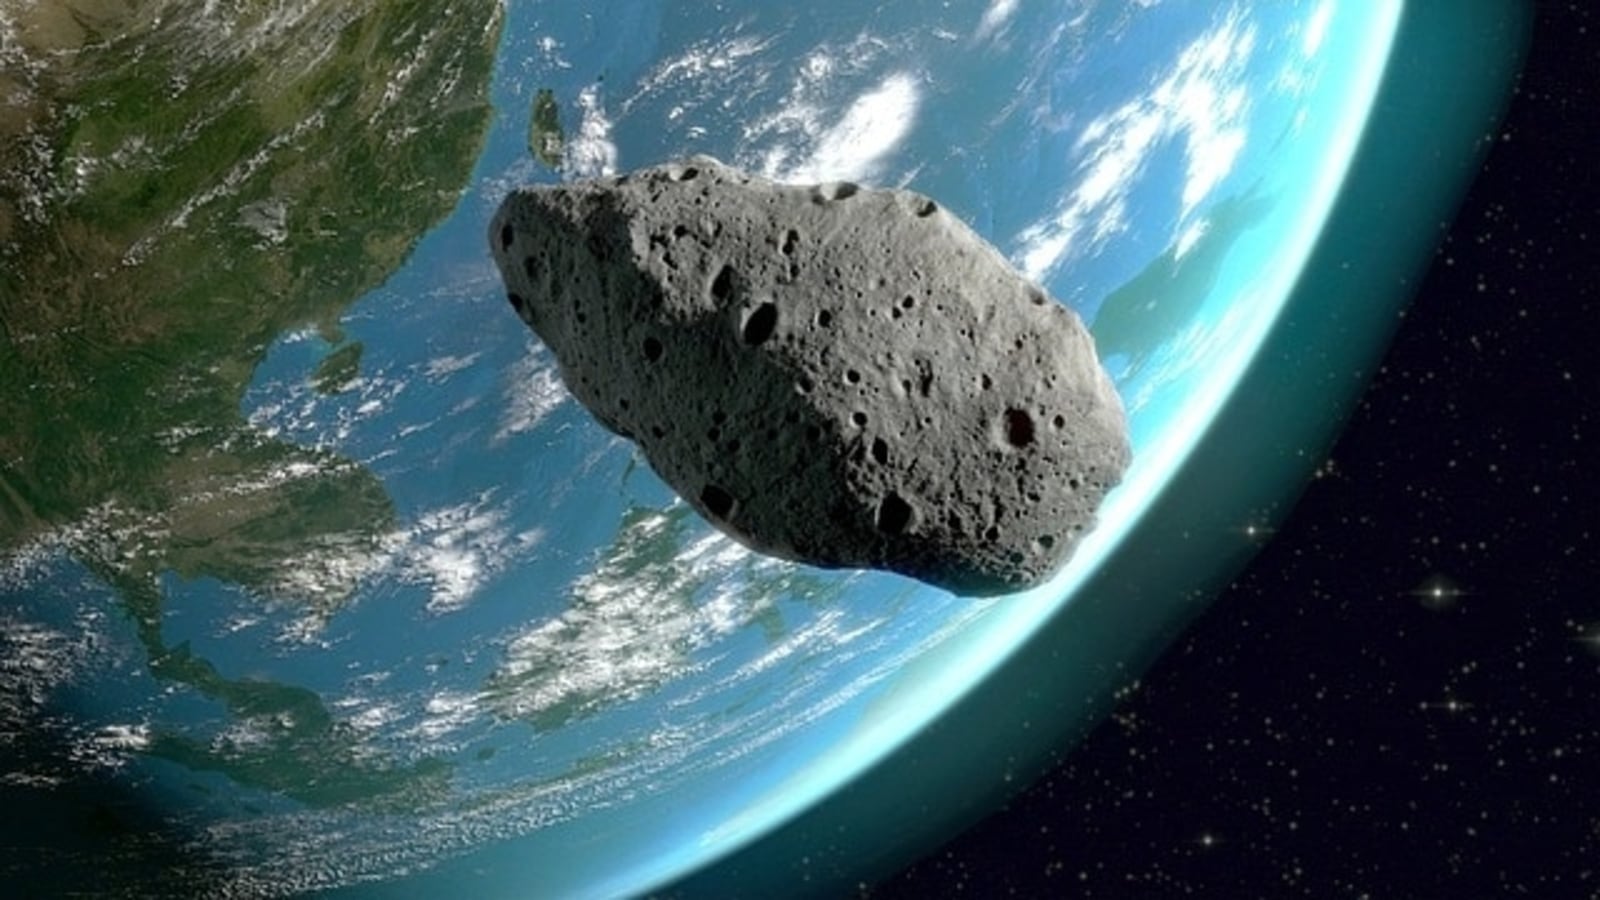 Avertir!  Un astéroïde potentiellement dangereux de la taille d’un stade s’approche dangereusement de la Terre aujourd’hui !